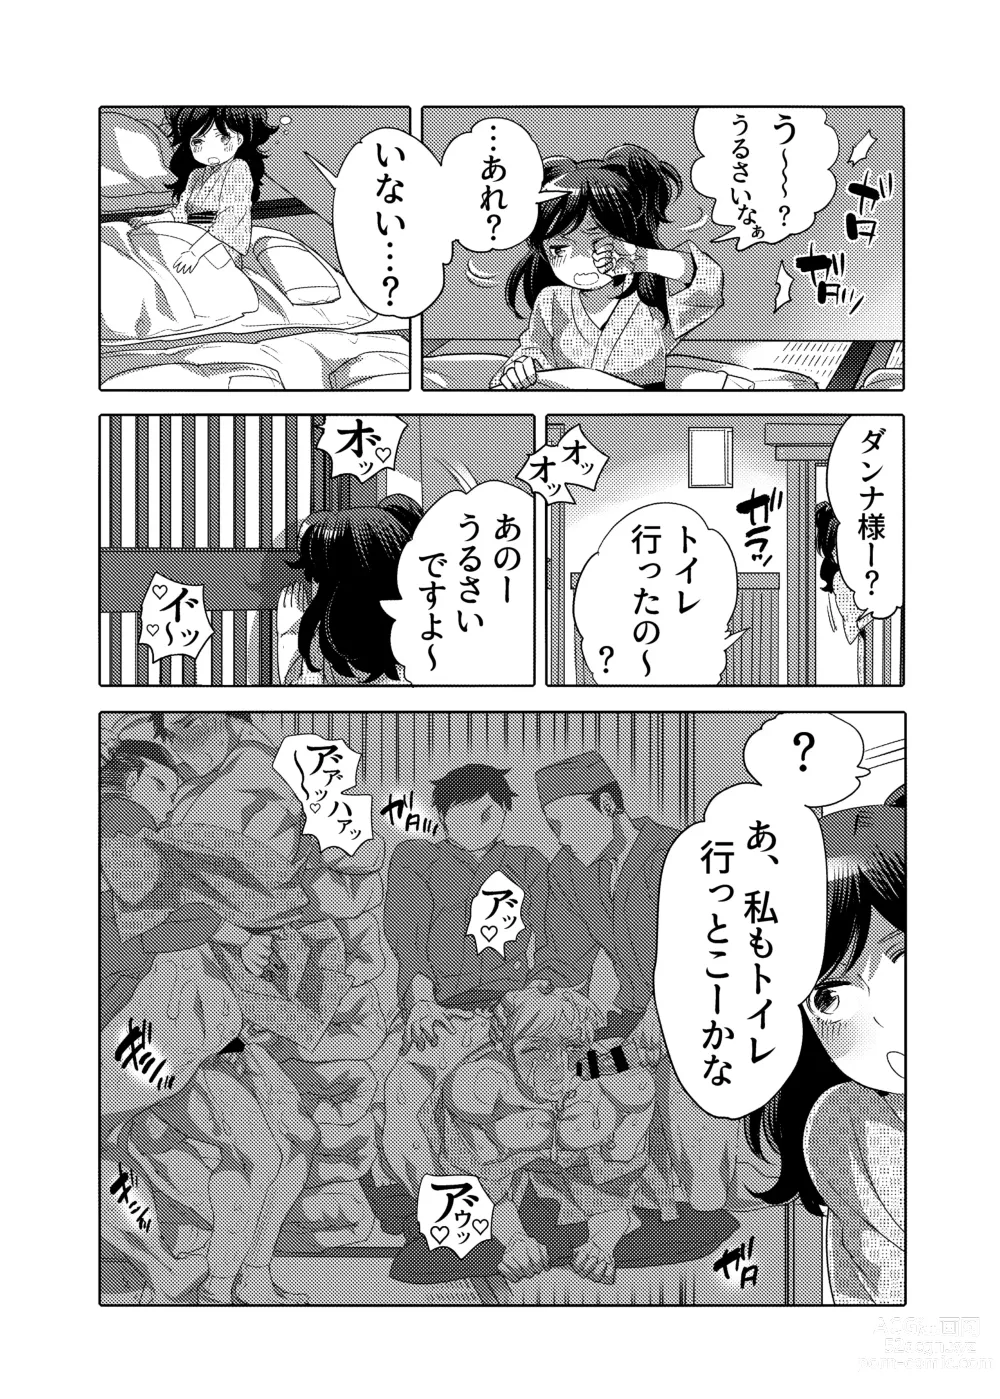 Page 56 of doujinshi Chikan OK Sare Danshi